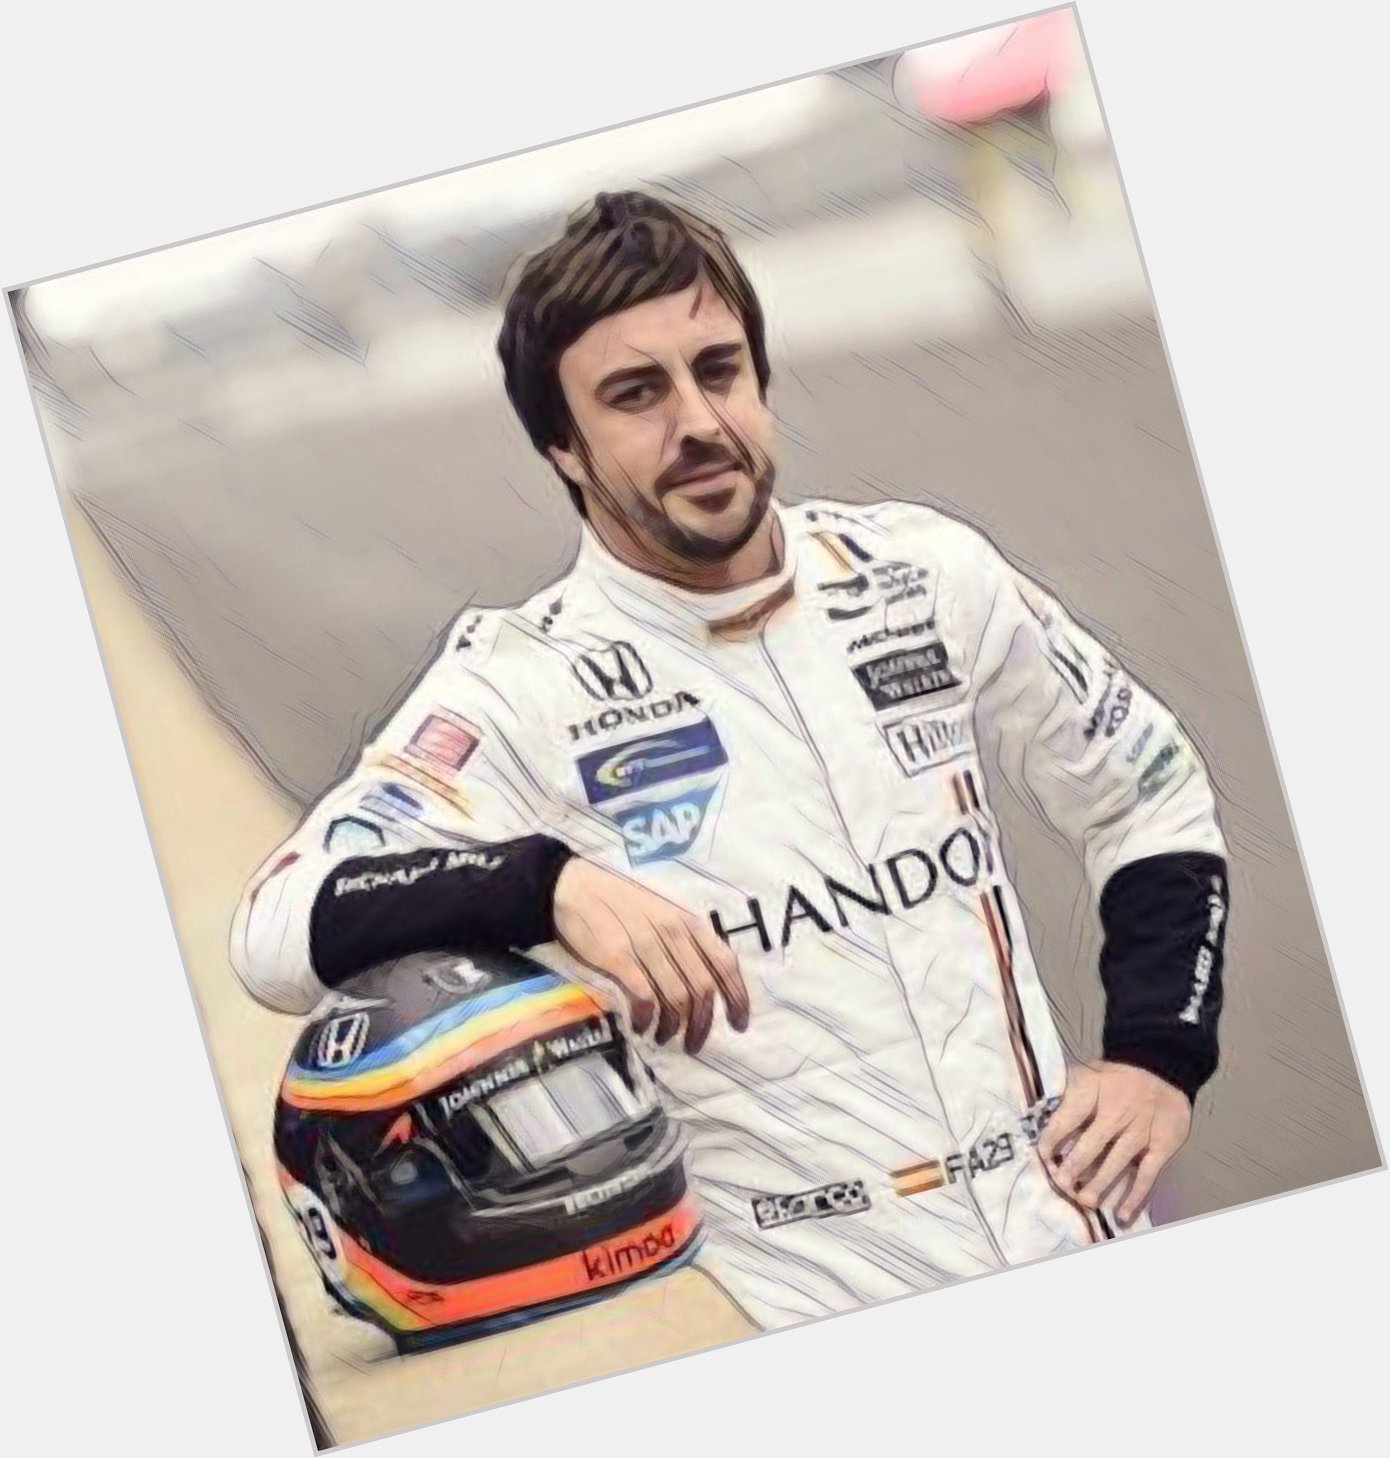 Today7/29, Fernando Alonso birthday. , Happy birthday 